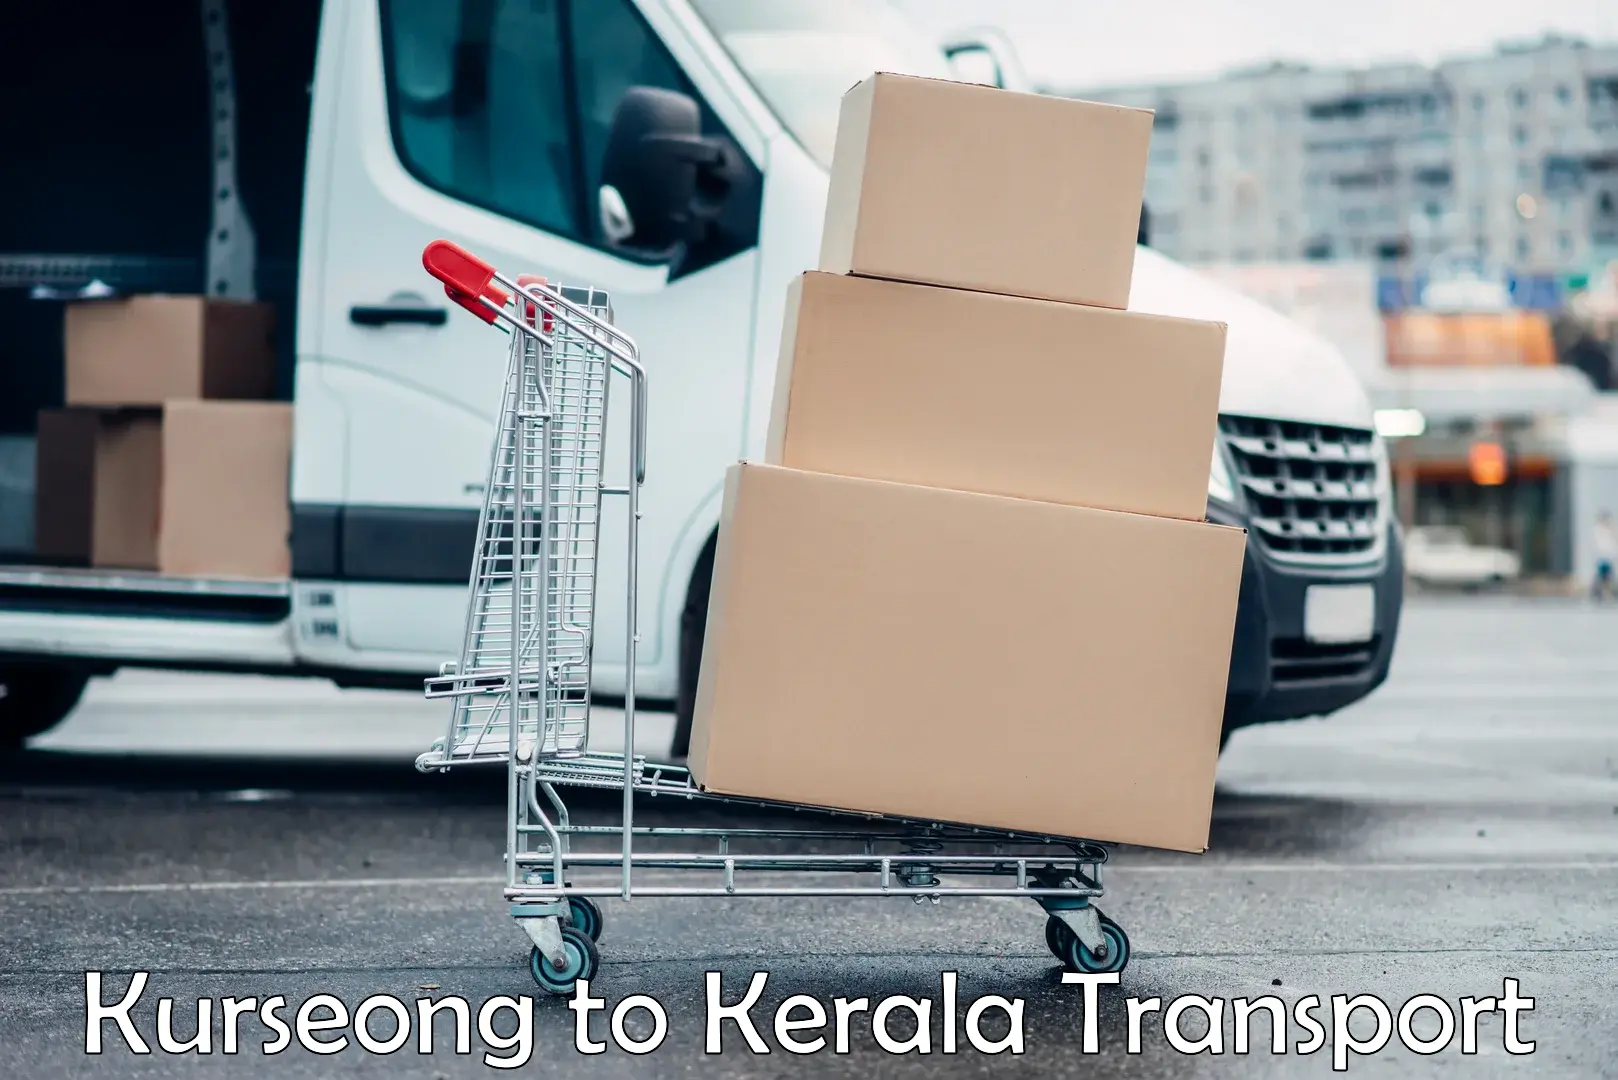 Transport services Kurseong to Kerala